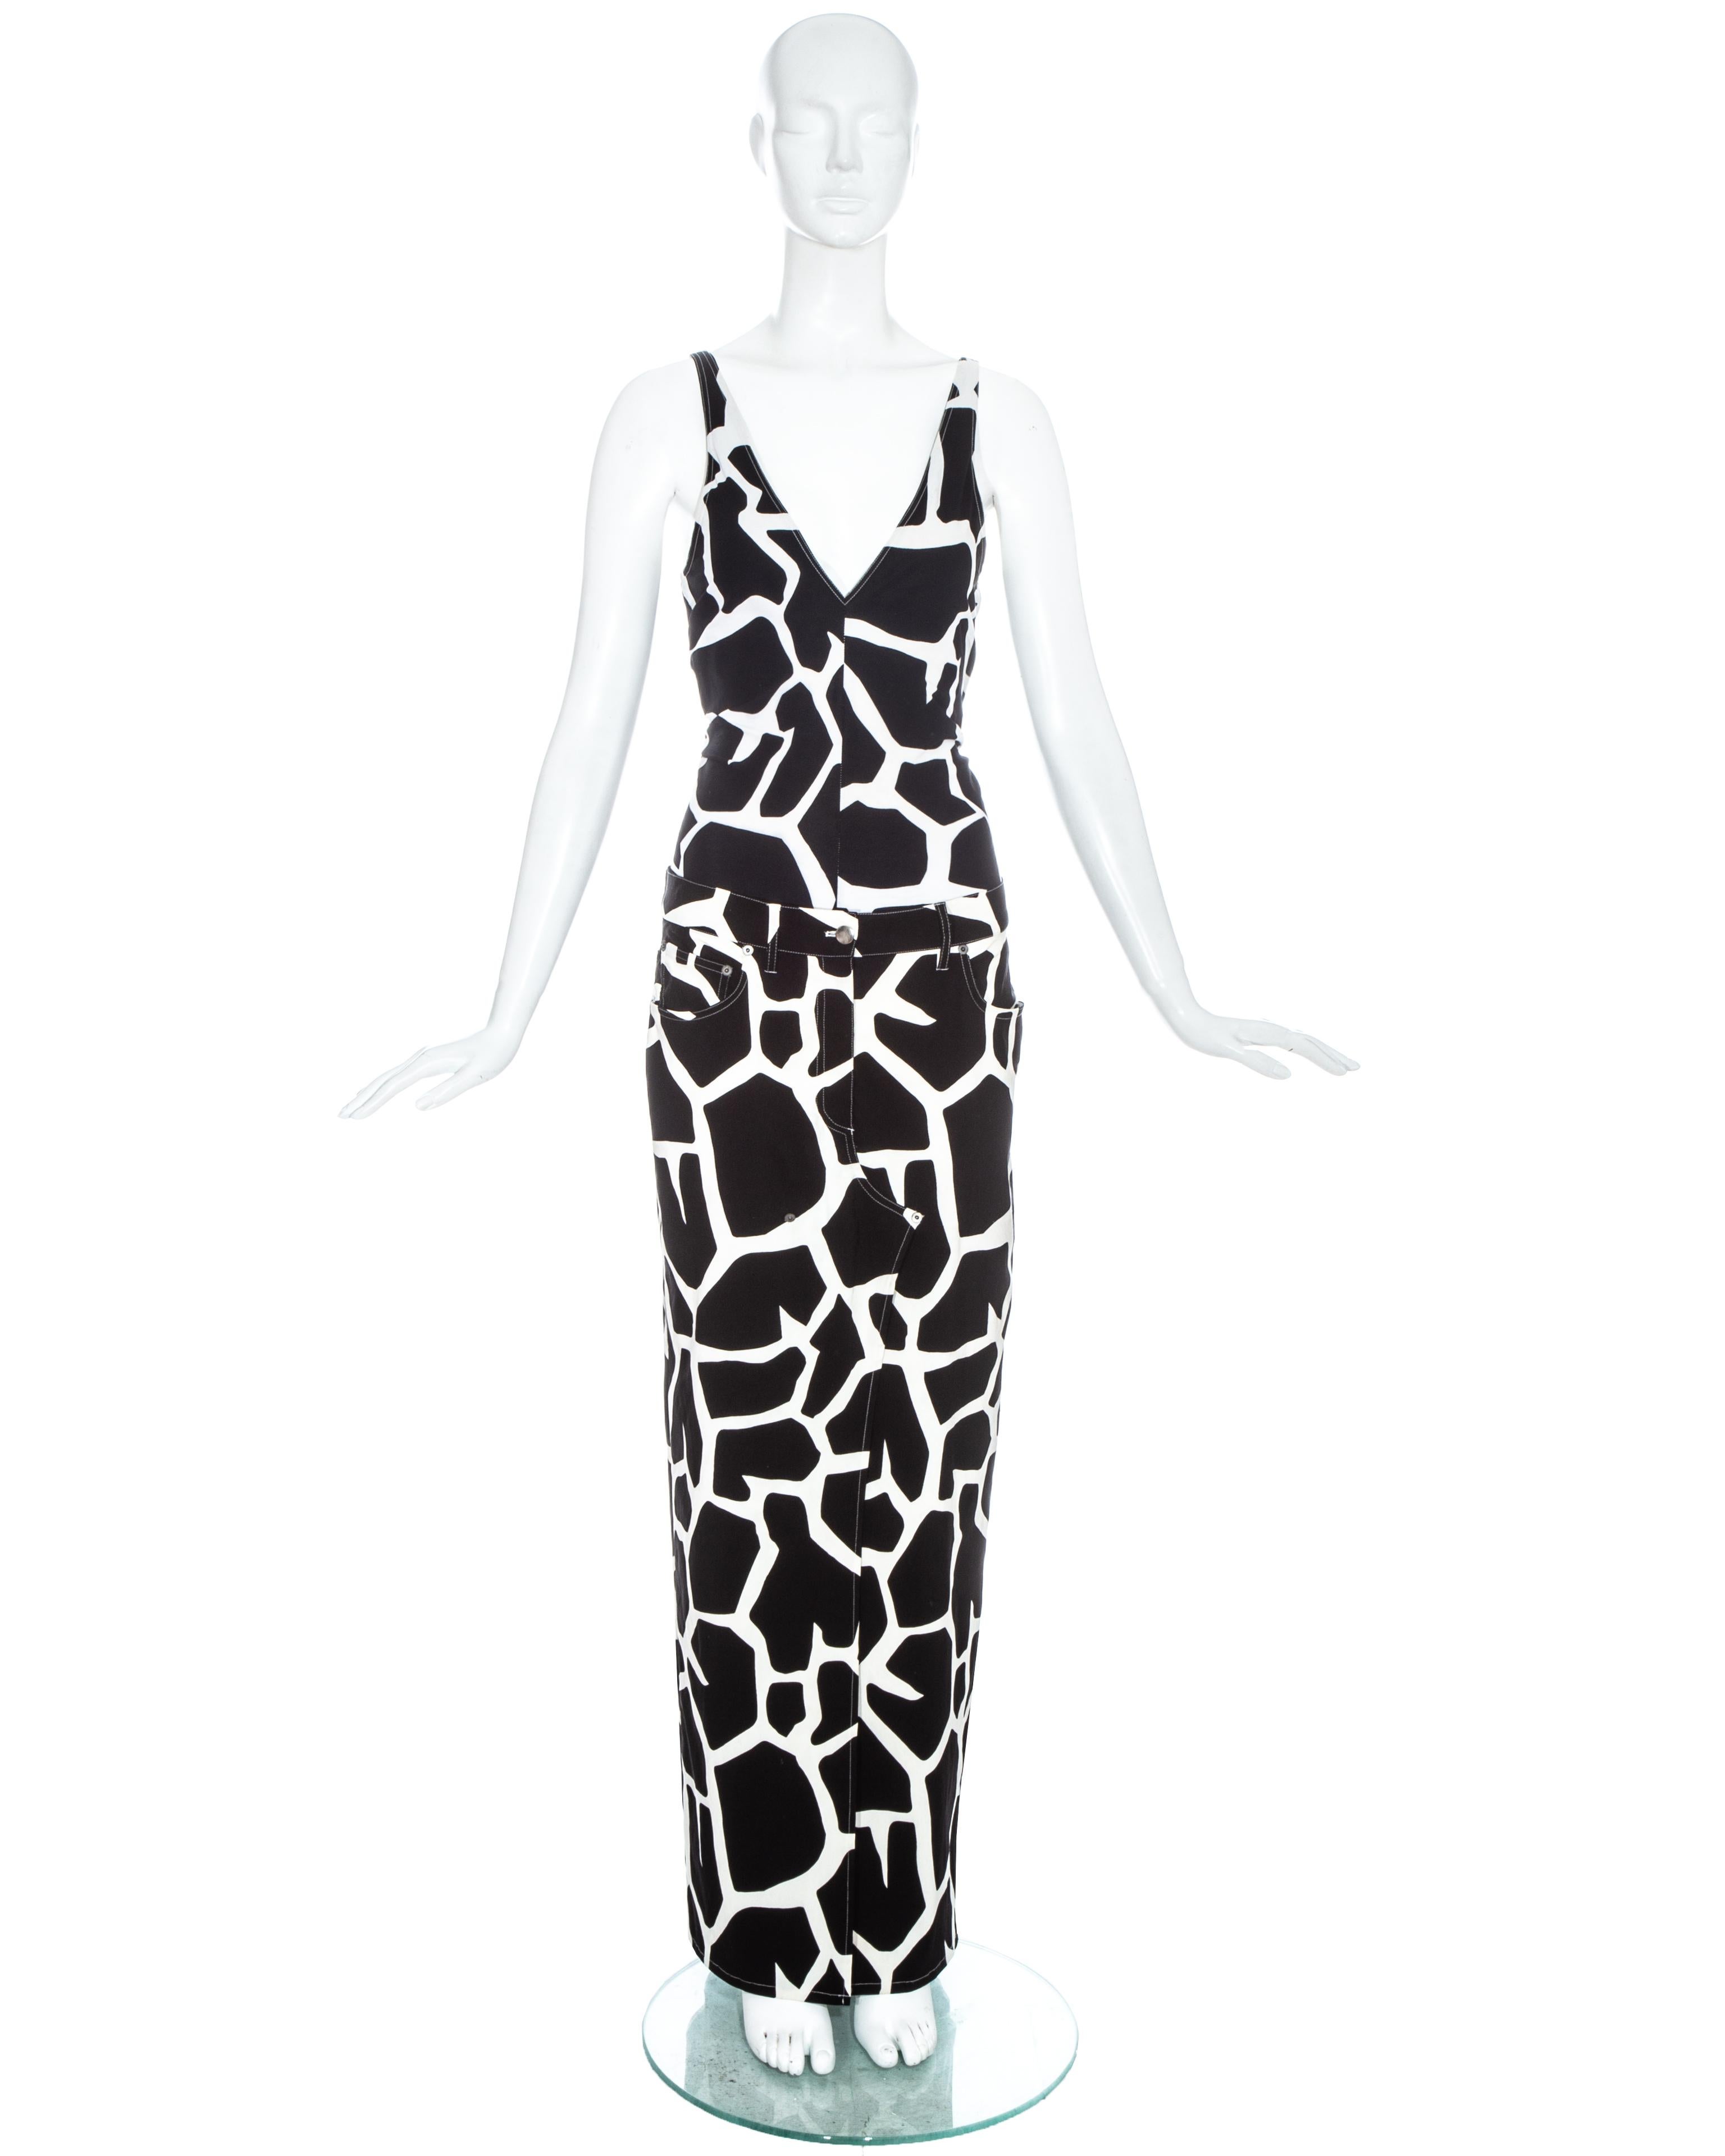 Ensemble jupe noir et blanc de John Galliano comprenant : gilet à col en V et jupe maxi avec fente haute sur le devant et dans le dos.

Printemps-été 2000